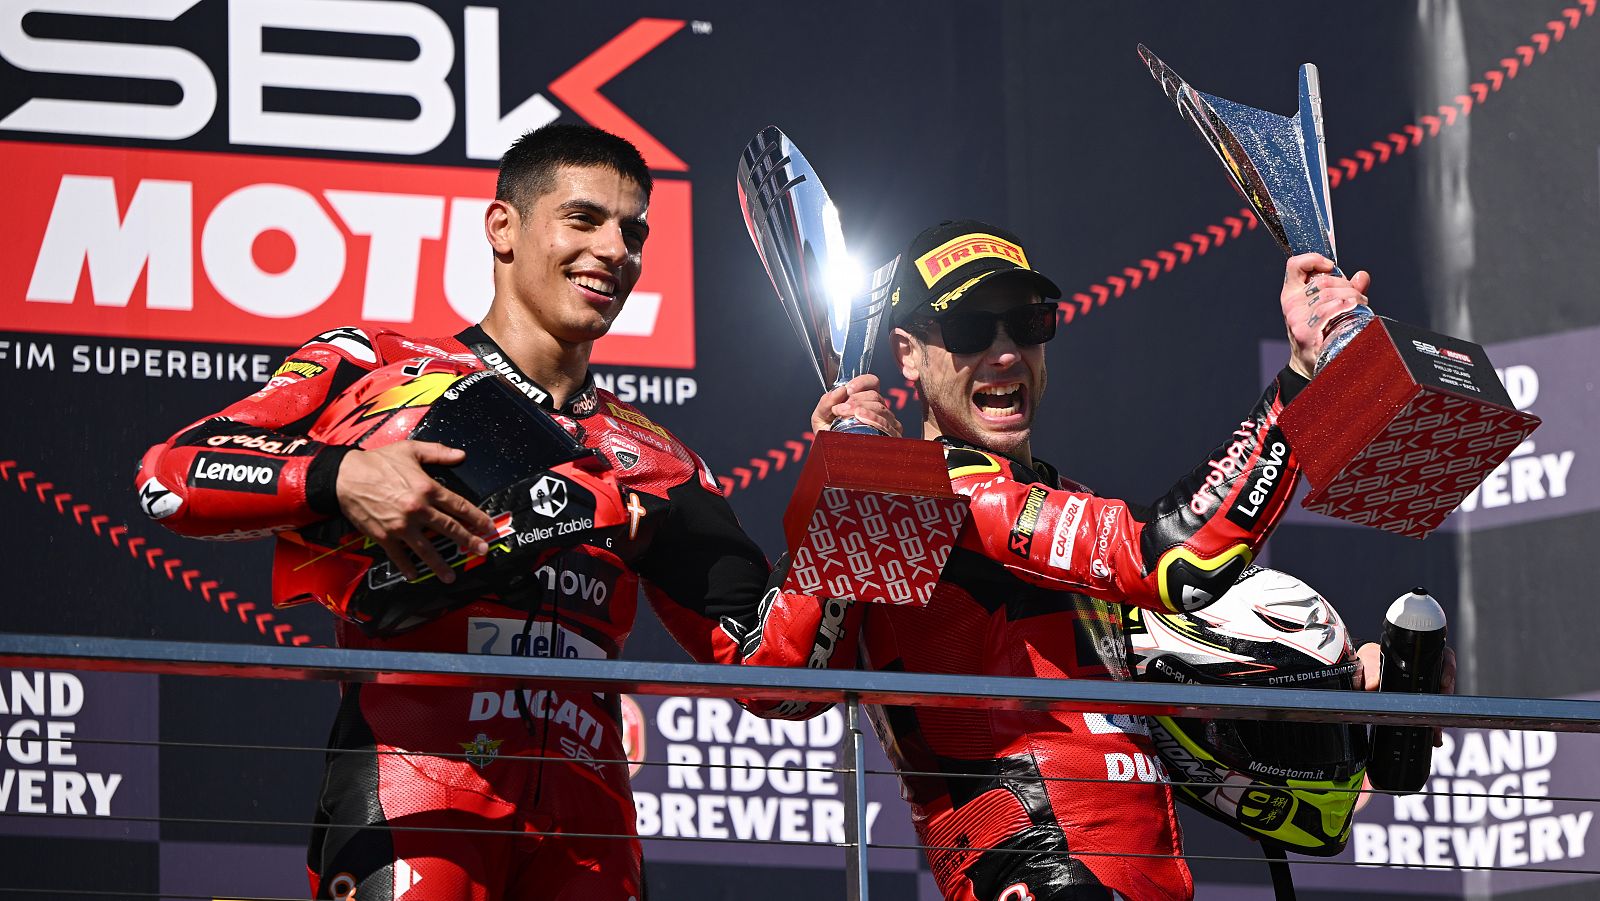 El anlisis de Marc Martn: el binomio Bautista+Ducati, imbatibles en SBK